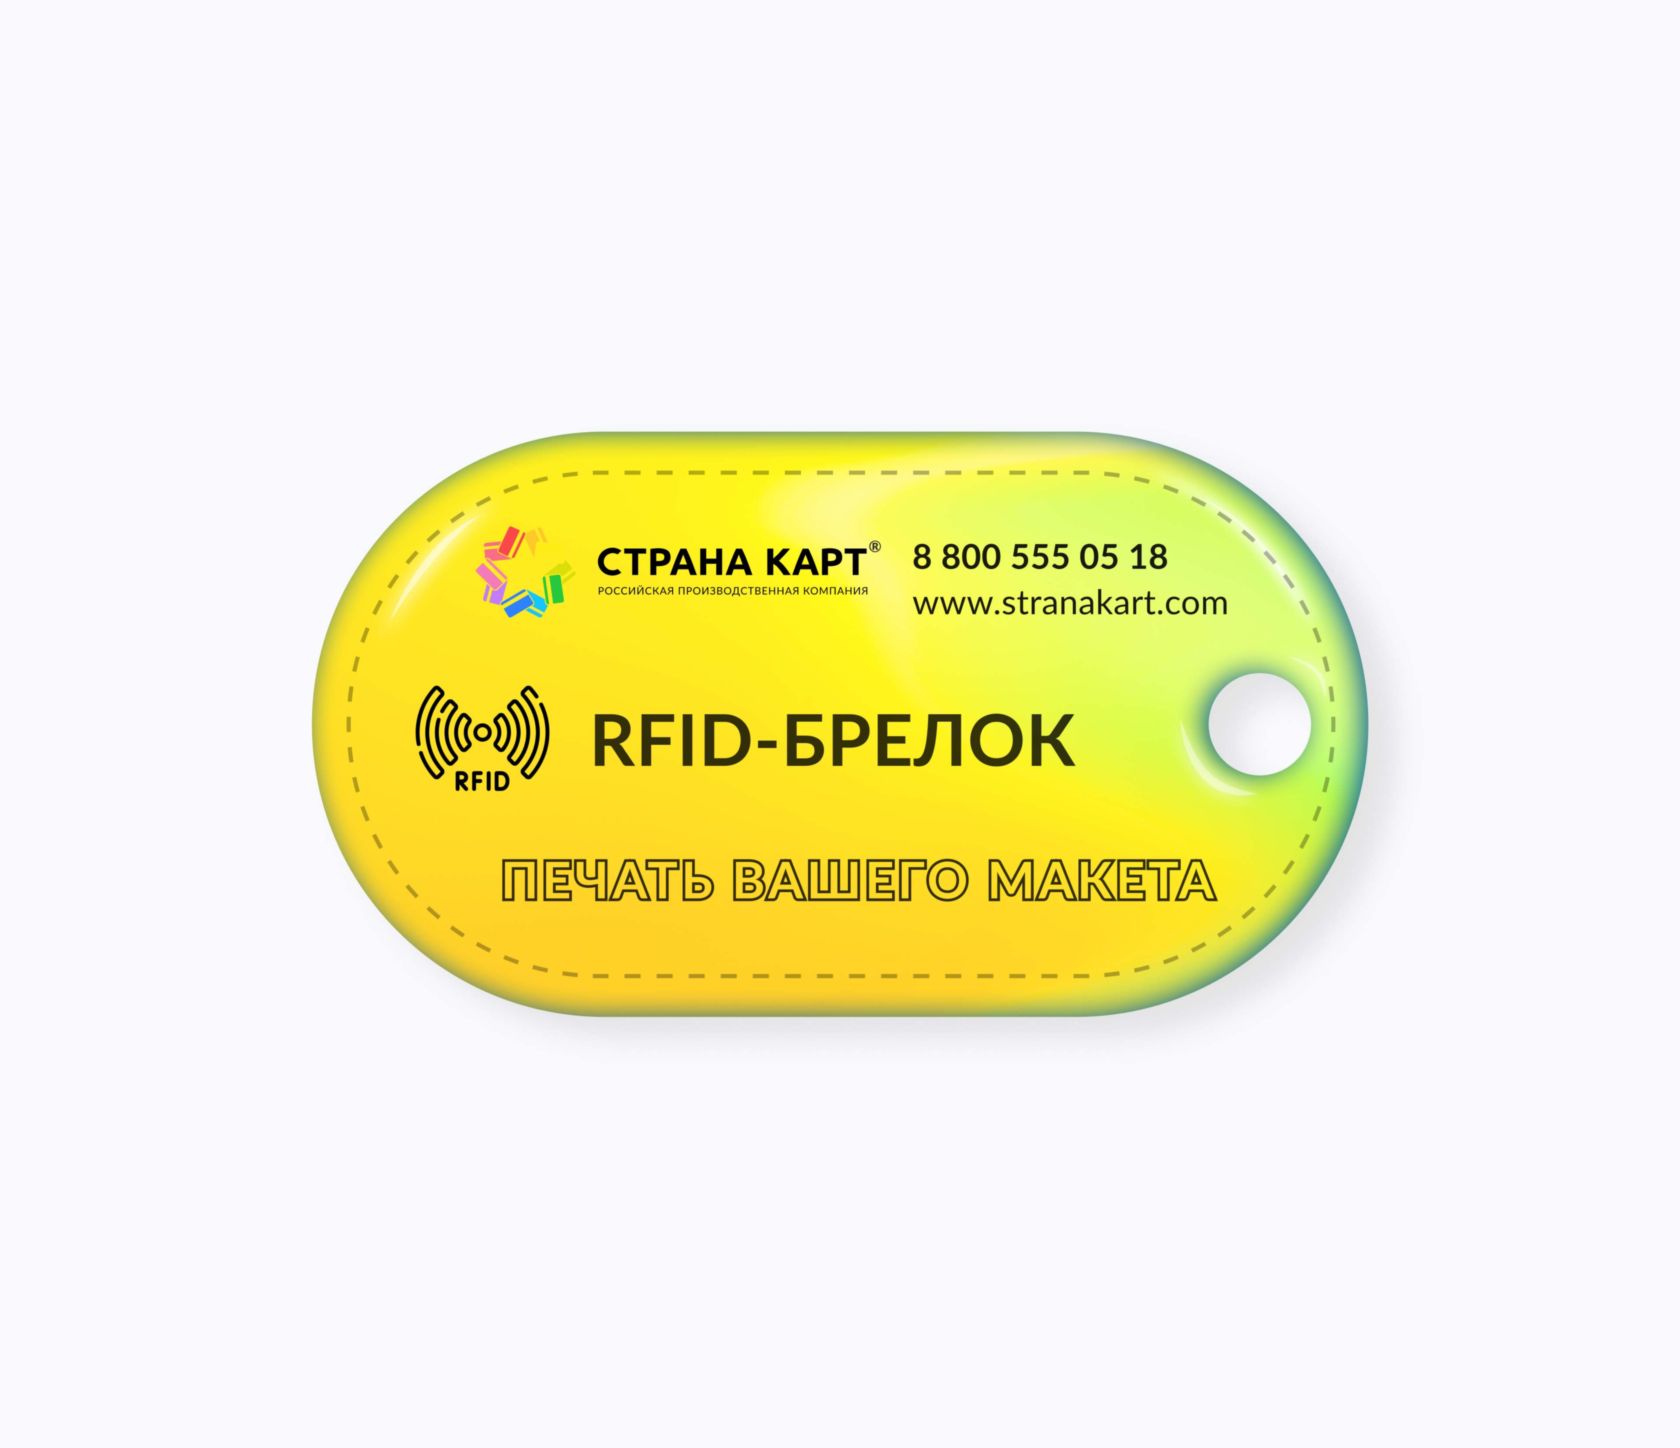 Овальные RFID-брелоки NEOKEY® с чипом для оплаты школьного питания RFID-брелоки NEOKEY® с чипом для оплаты школьного питания